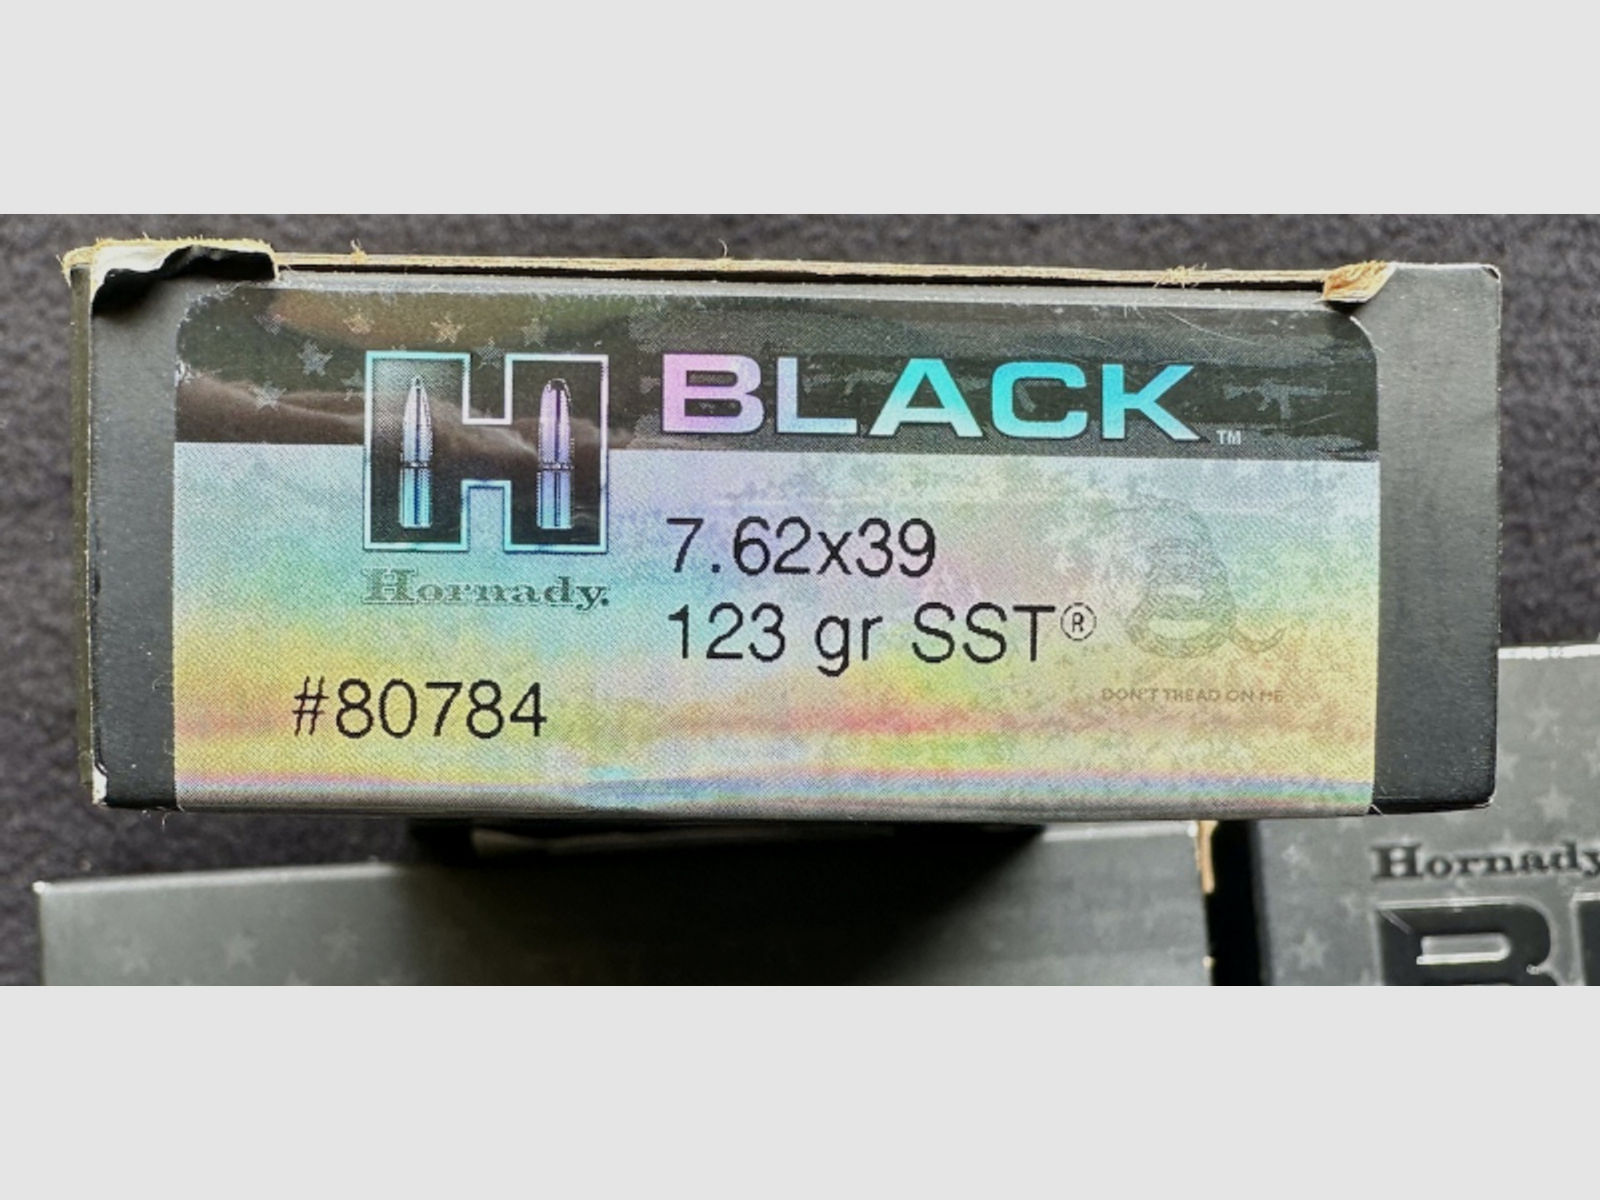 70 Patronen Hornady Black - 7,62x39 - SST - 123 gn. - 8,0g - 80784